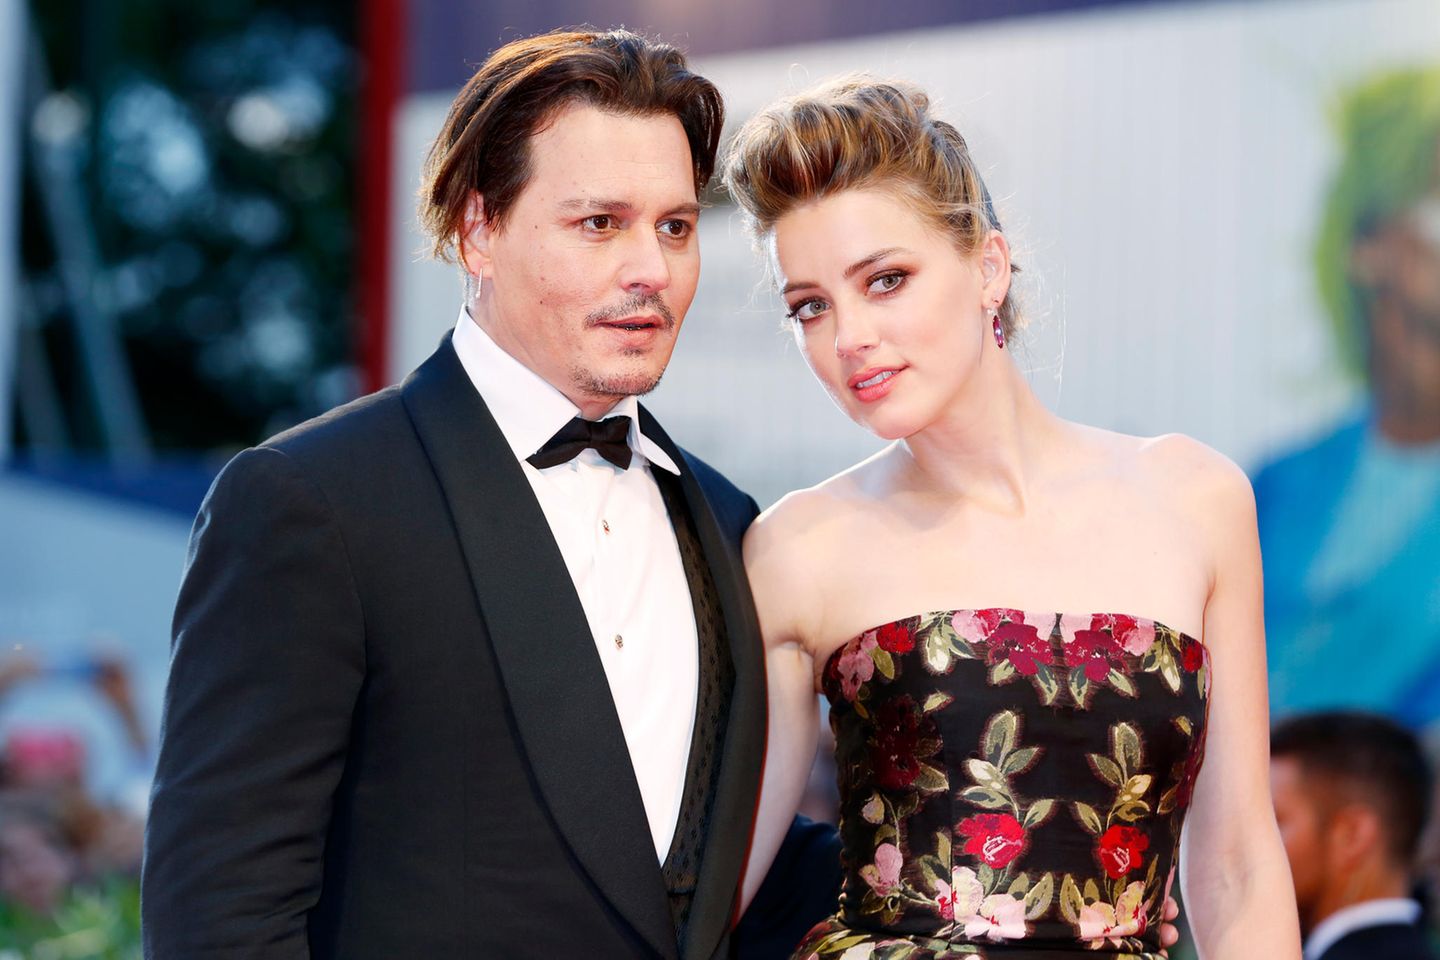 Johnny Depp und Amber Heard posieren für ein Foto.